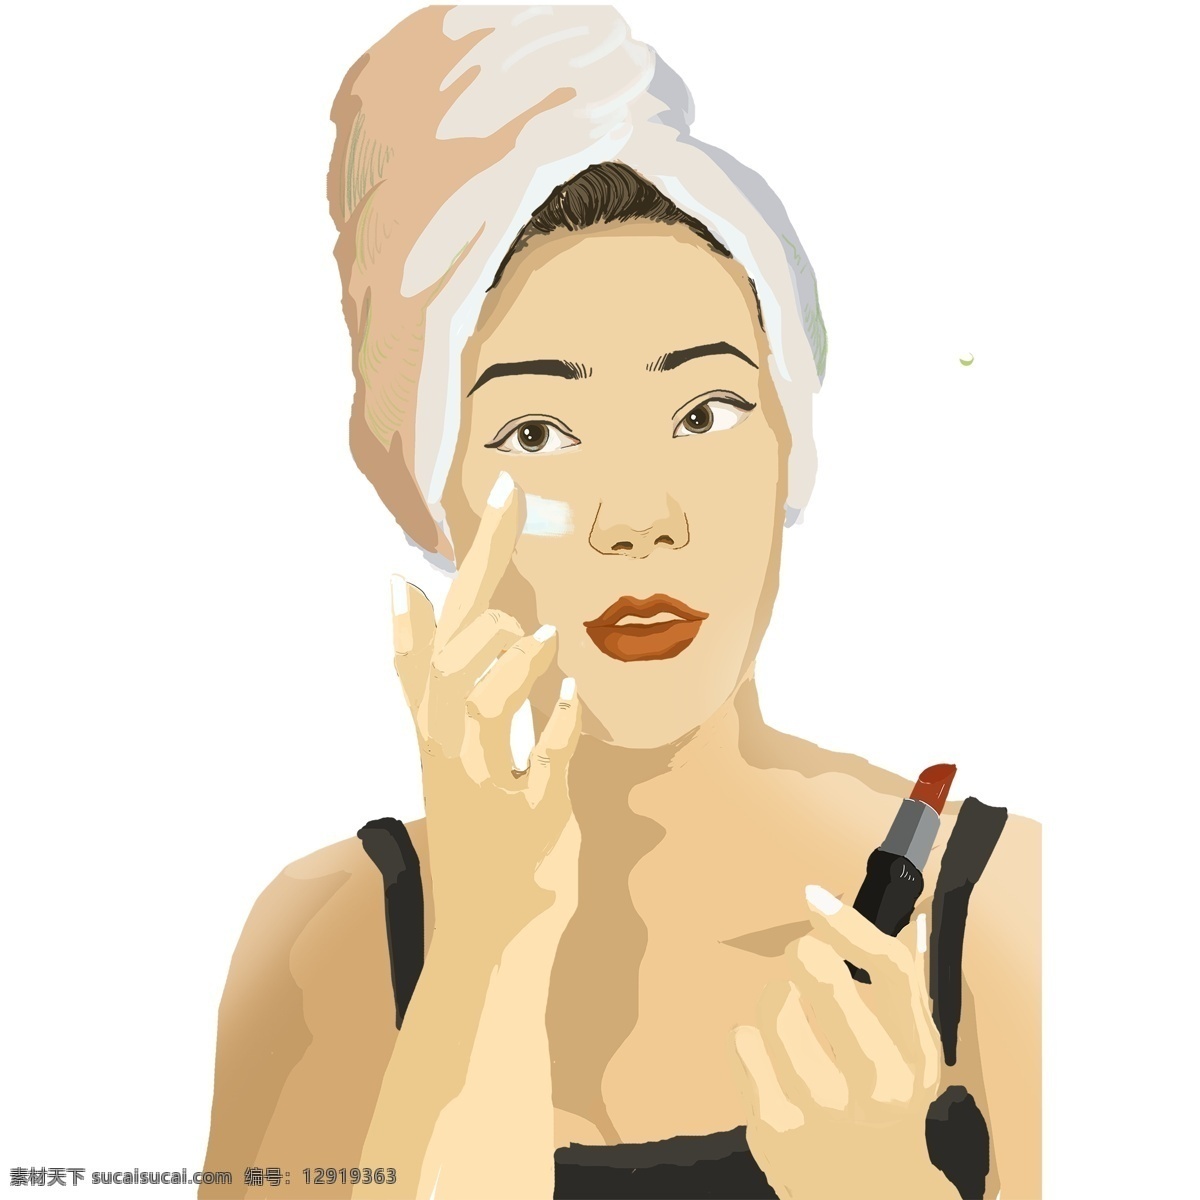 卡通 手绘 化妆 女性人物 护肤 人物 插画 女性 女人 口红 美容